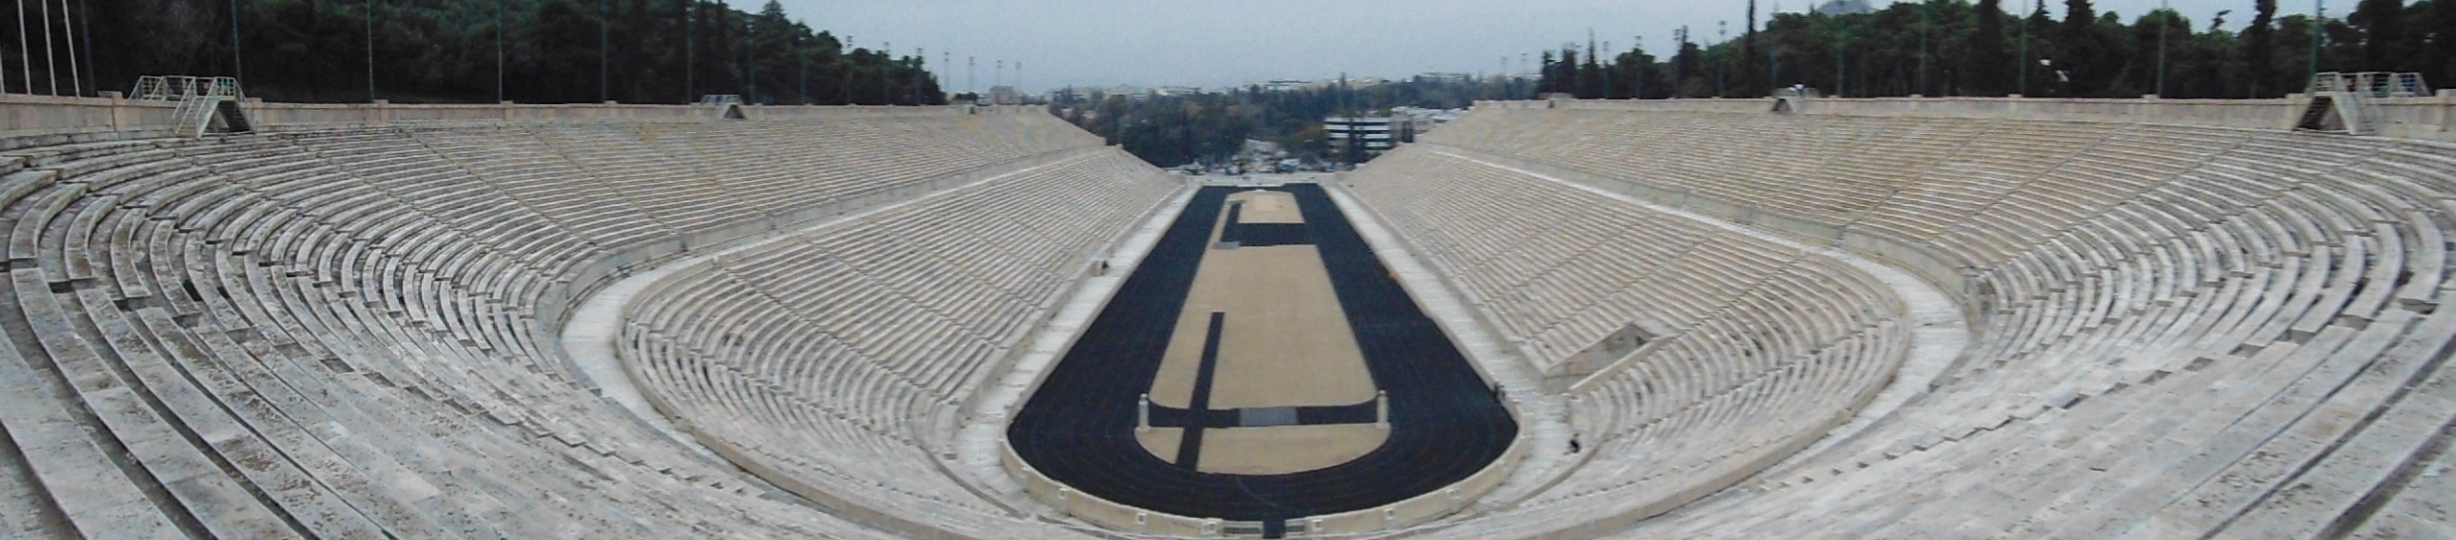 El Estadio Panathinaikos, sede de los primeros Juegos Olímpicos modernos y arena de gladiadores durante la época romana